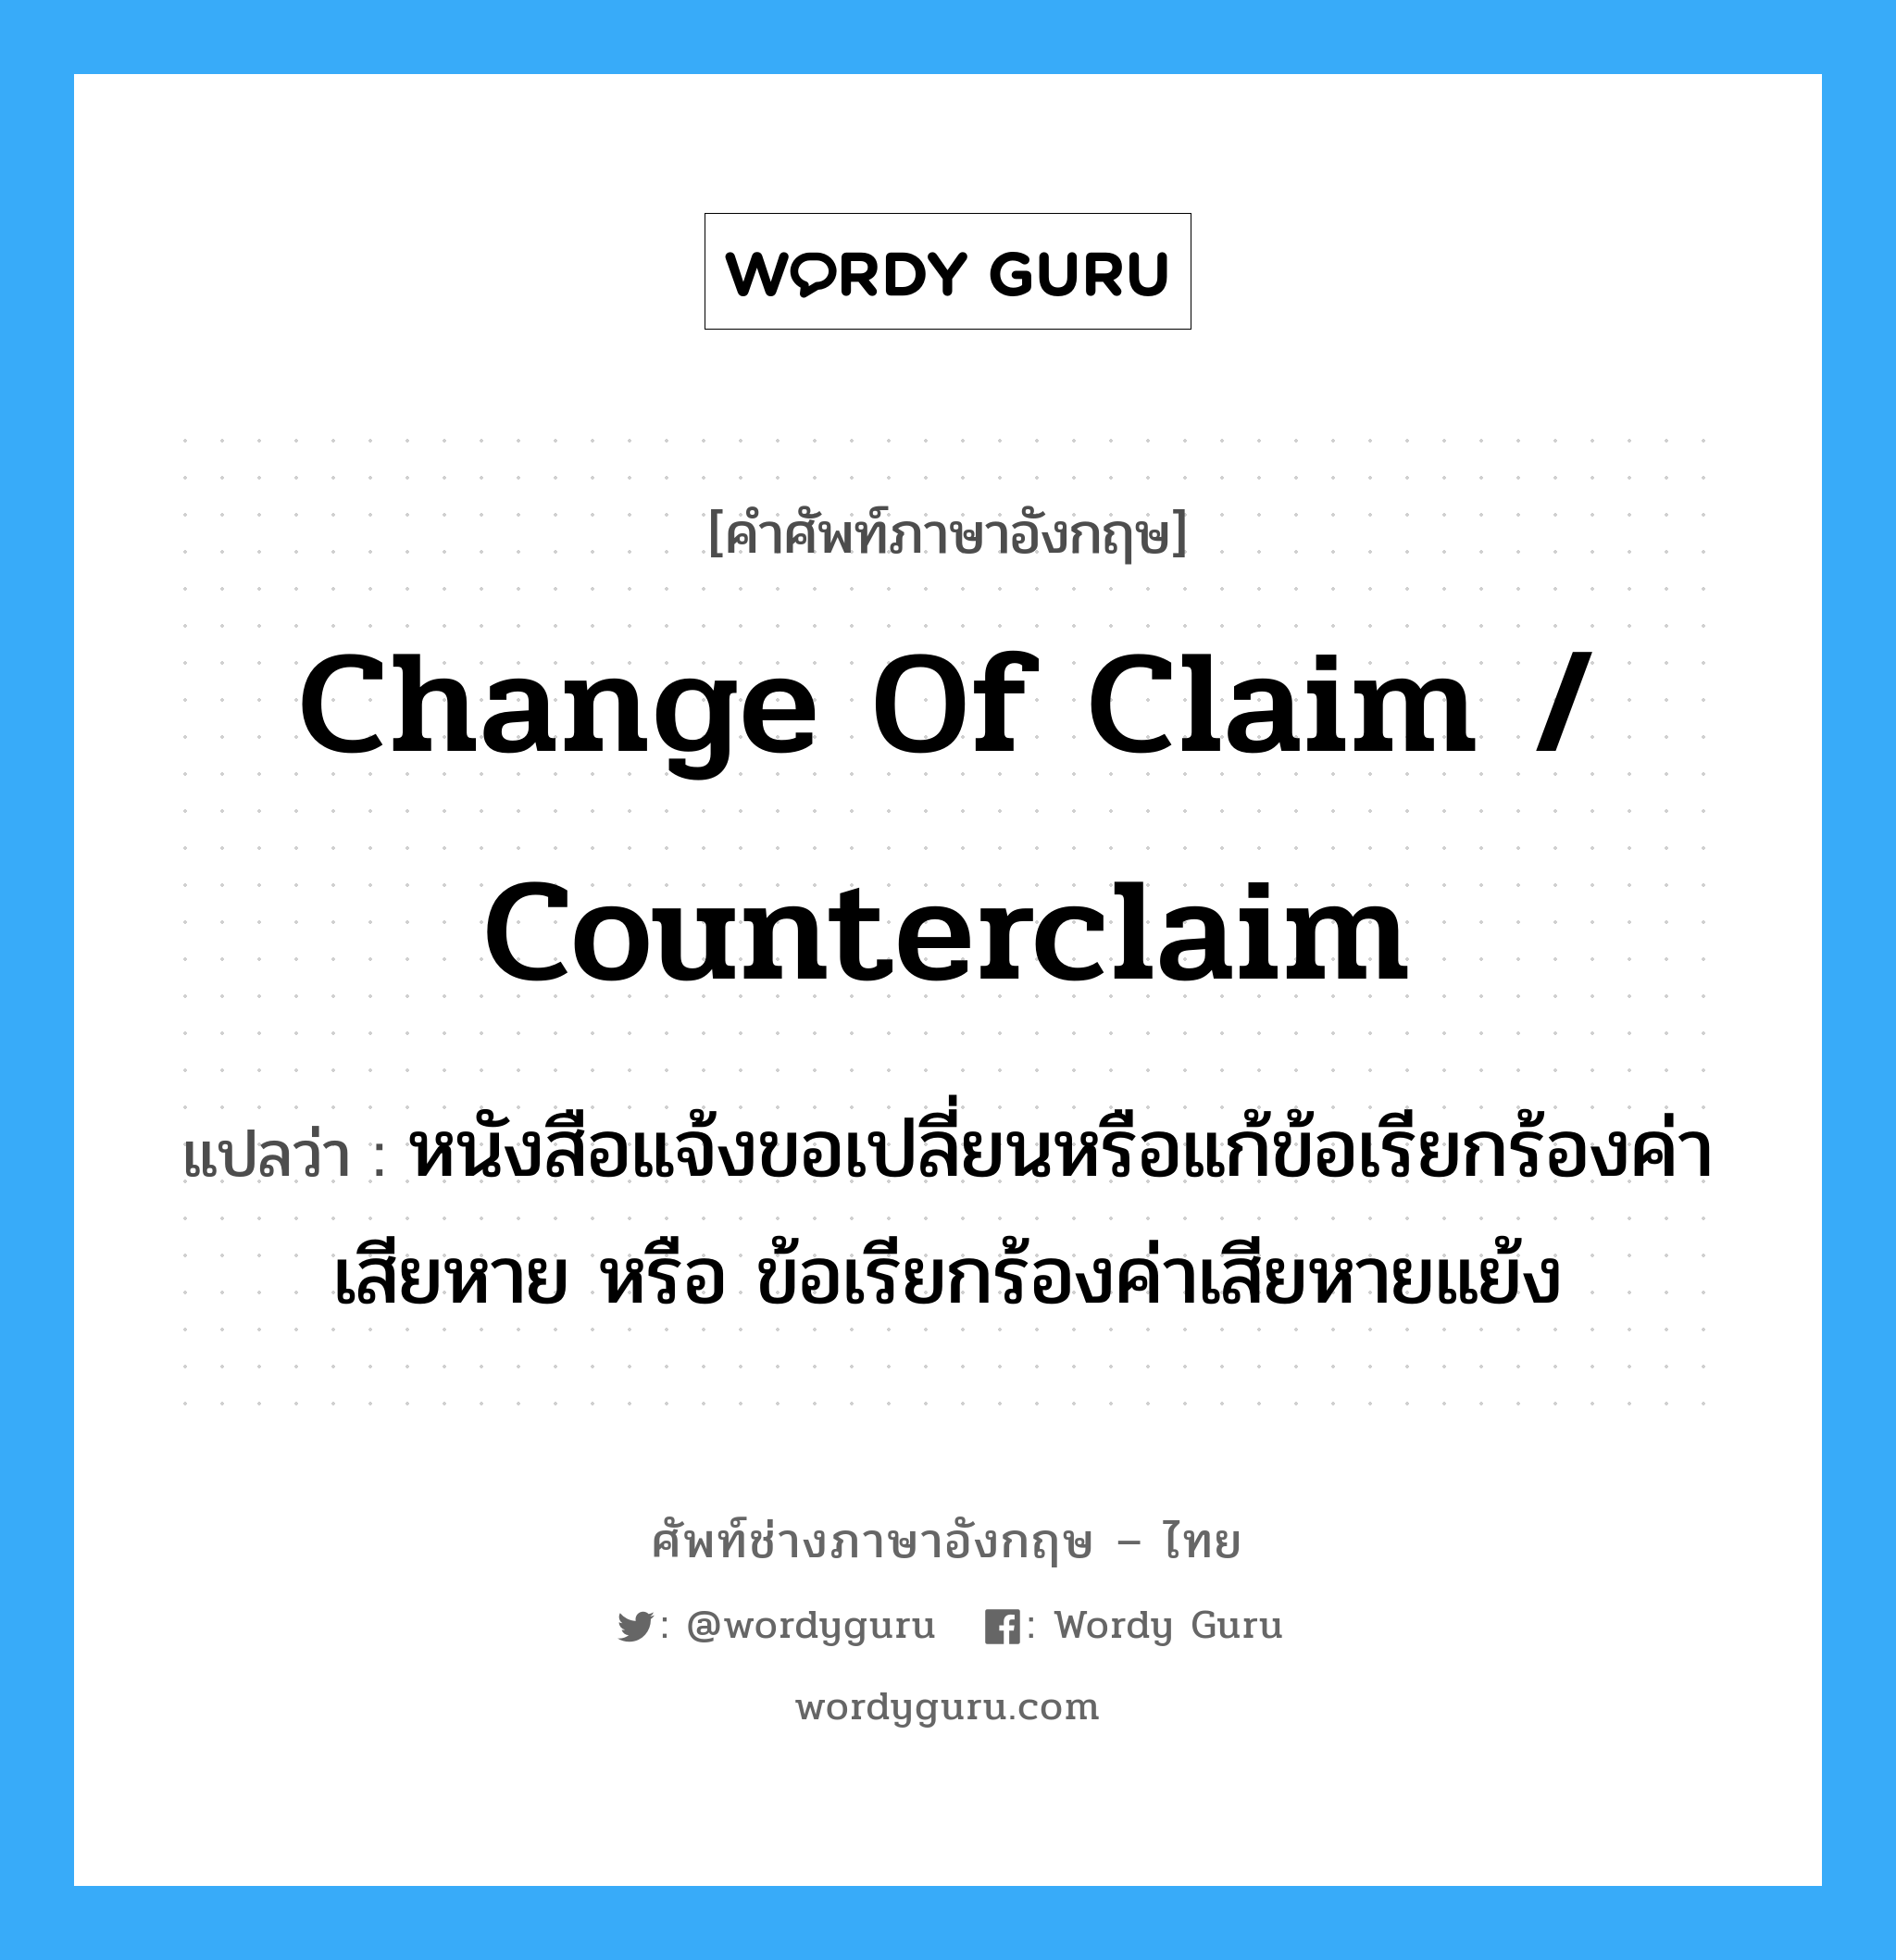 Change of Claim / Counterclaim แปลว่า?, คำศัพท์ช่างภาษาอังกฤษ - ไทย Change of Claim / Counterclaim คำศัพท์ภาษาอังกฤษ Change of Claim / Counterclaim แปลว่า หนังสือแจ้งขอเปลี่ยนหรือแก้ข้อเรียกร้องค่าเสียหาย หรือ ข้อเรียกร้องค่าเสียหายแย้ง